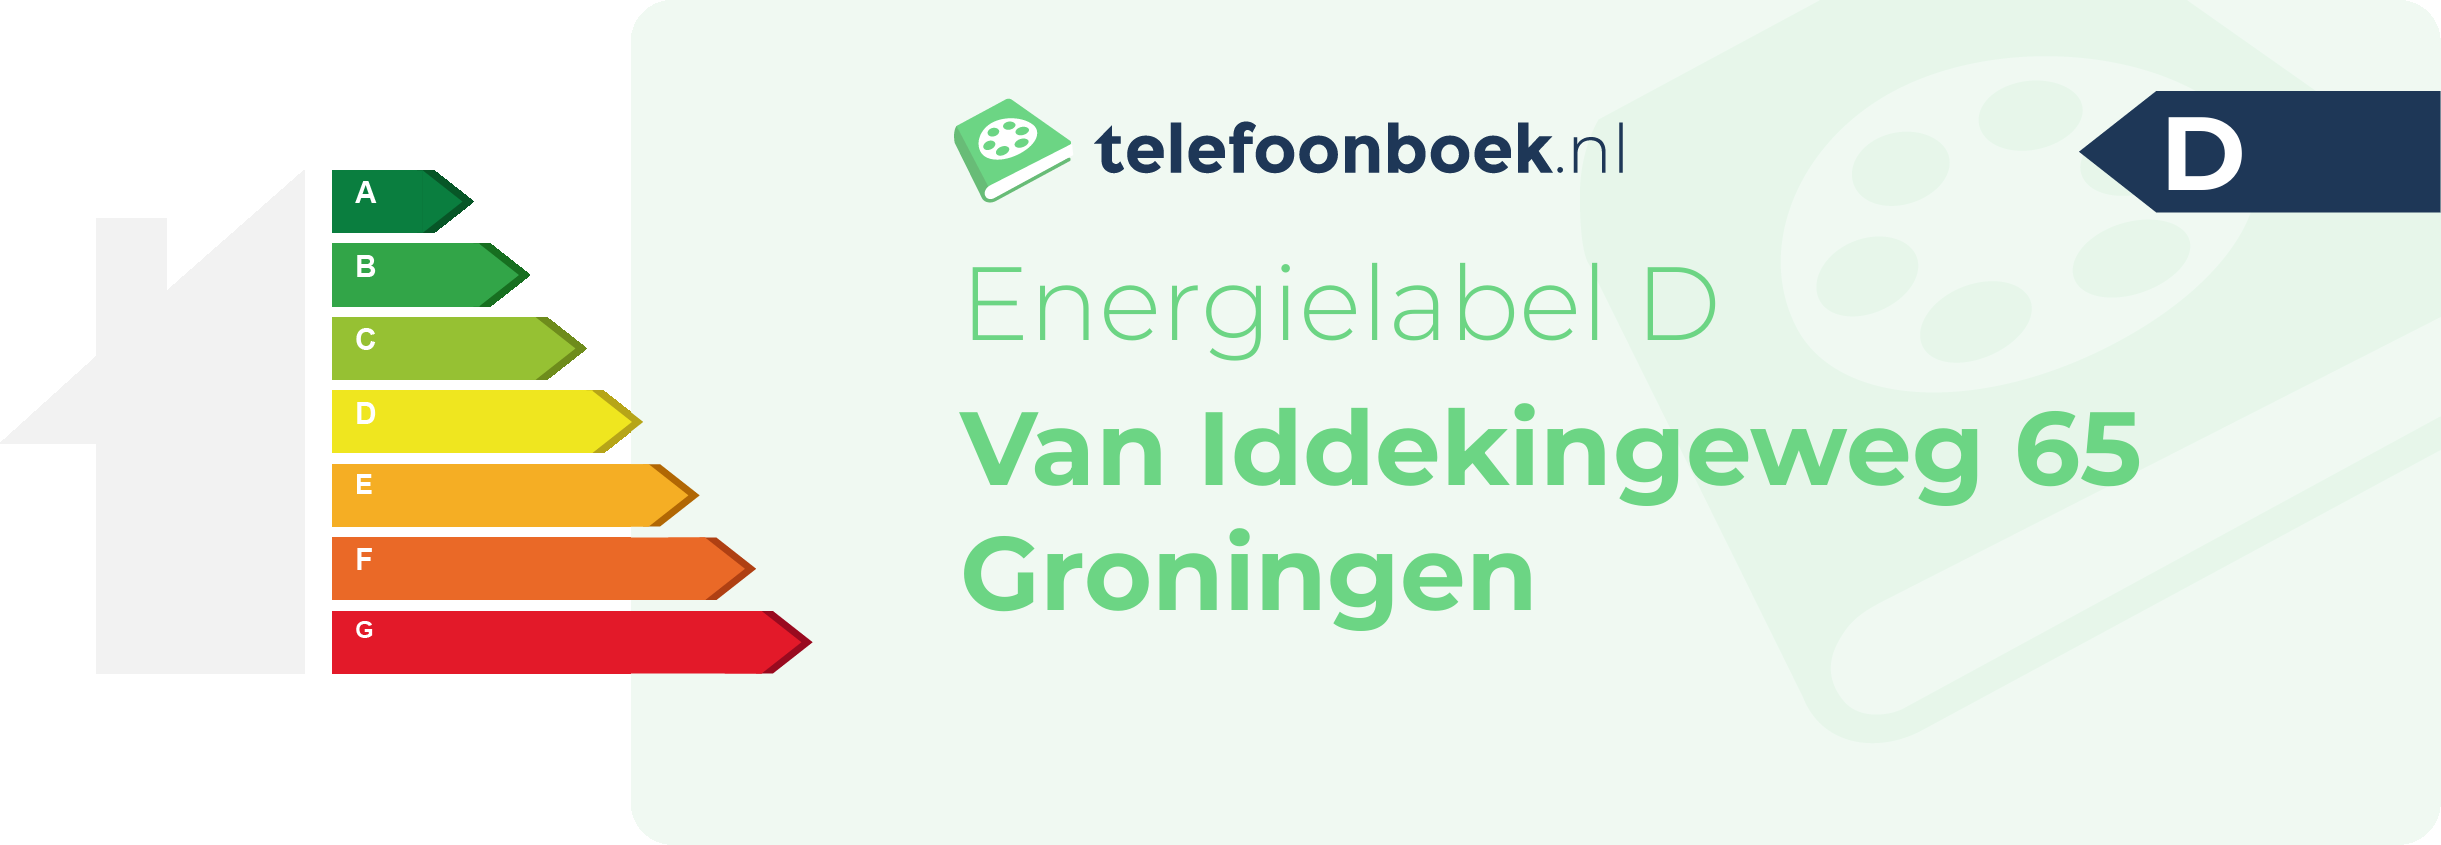 Energielabel Van Iddekingeweg 65 Groningen